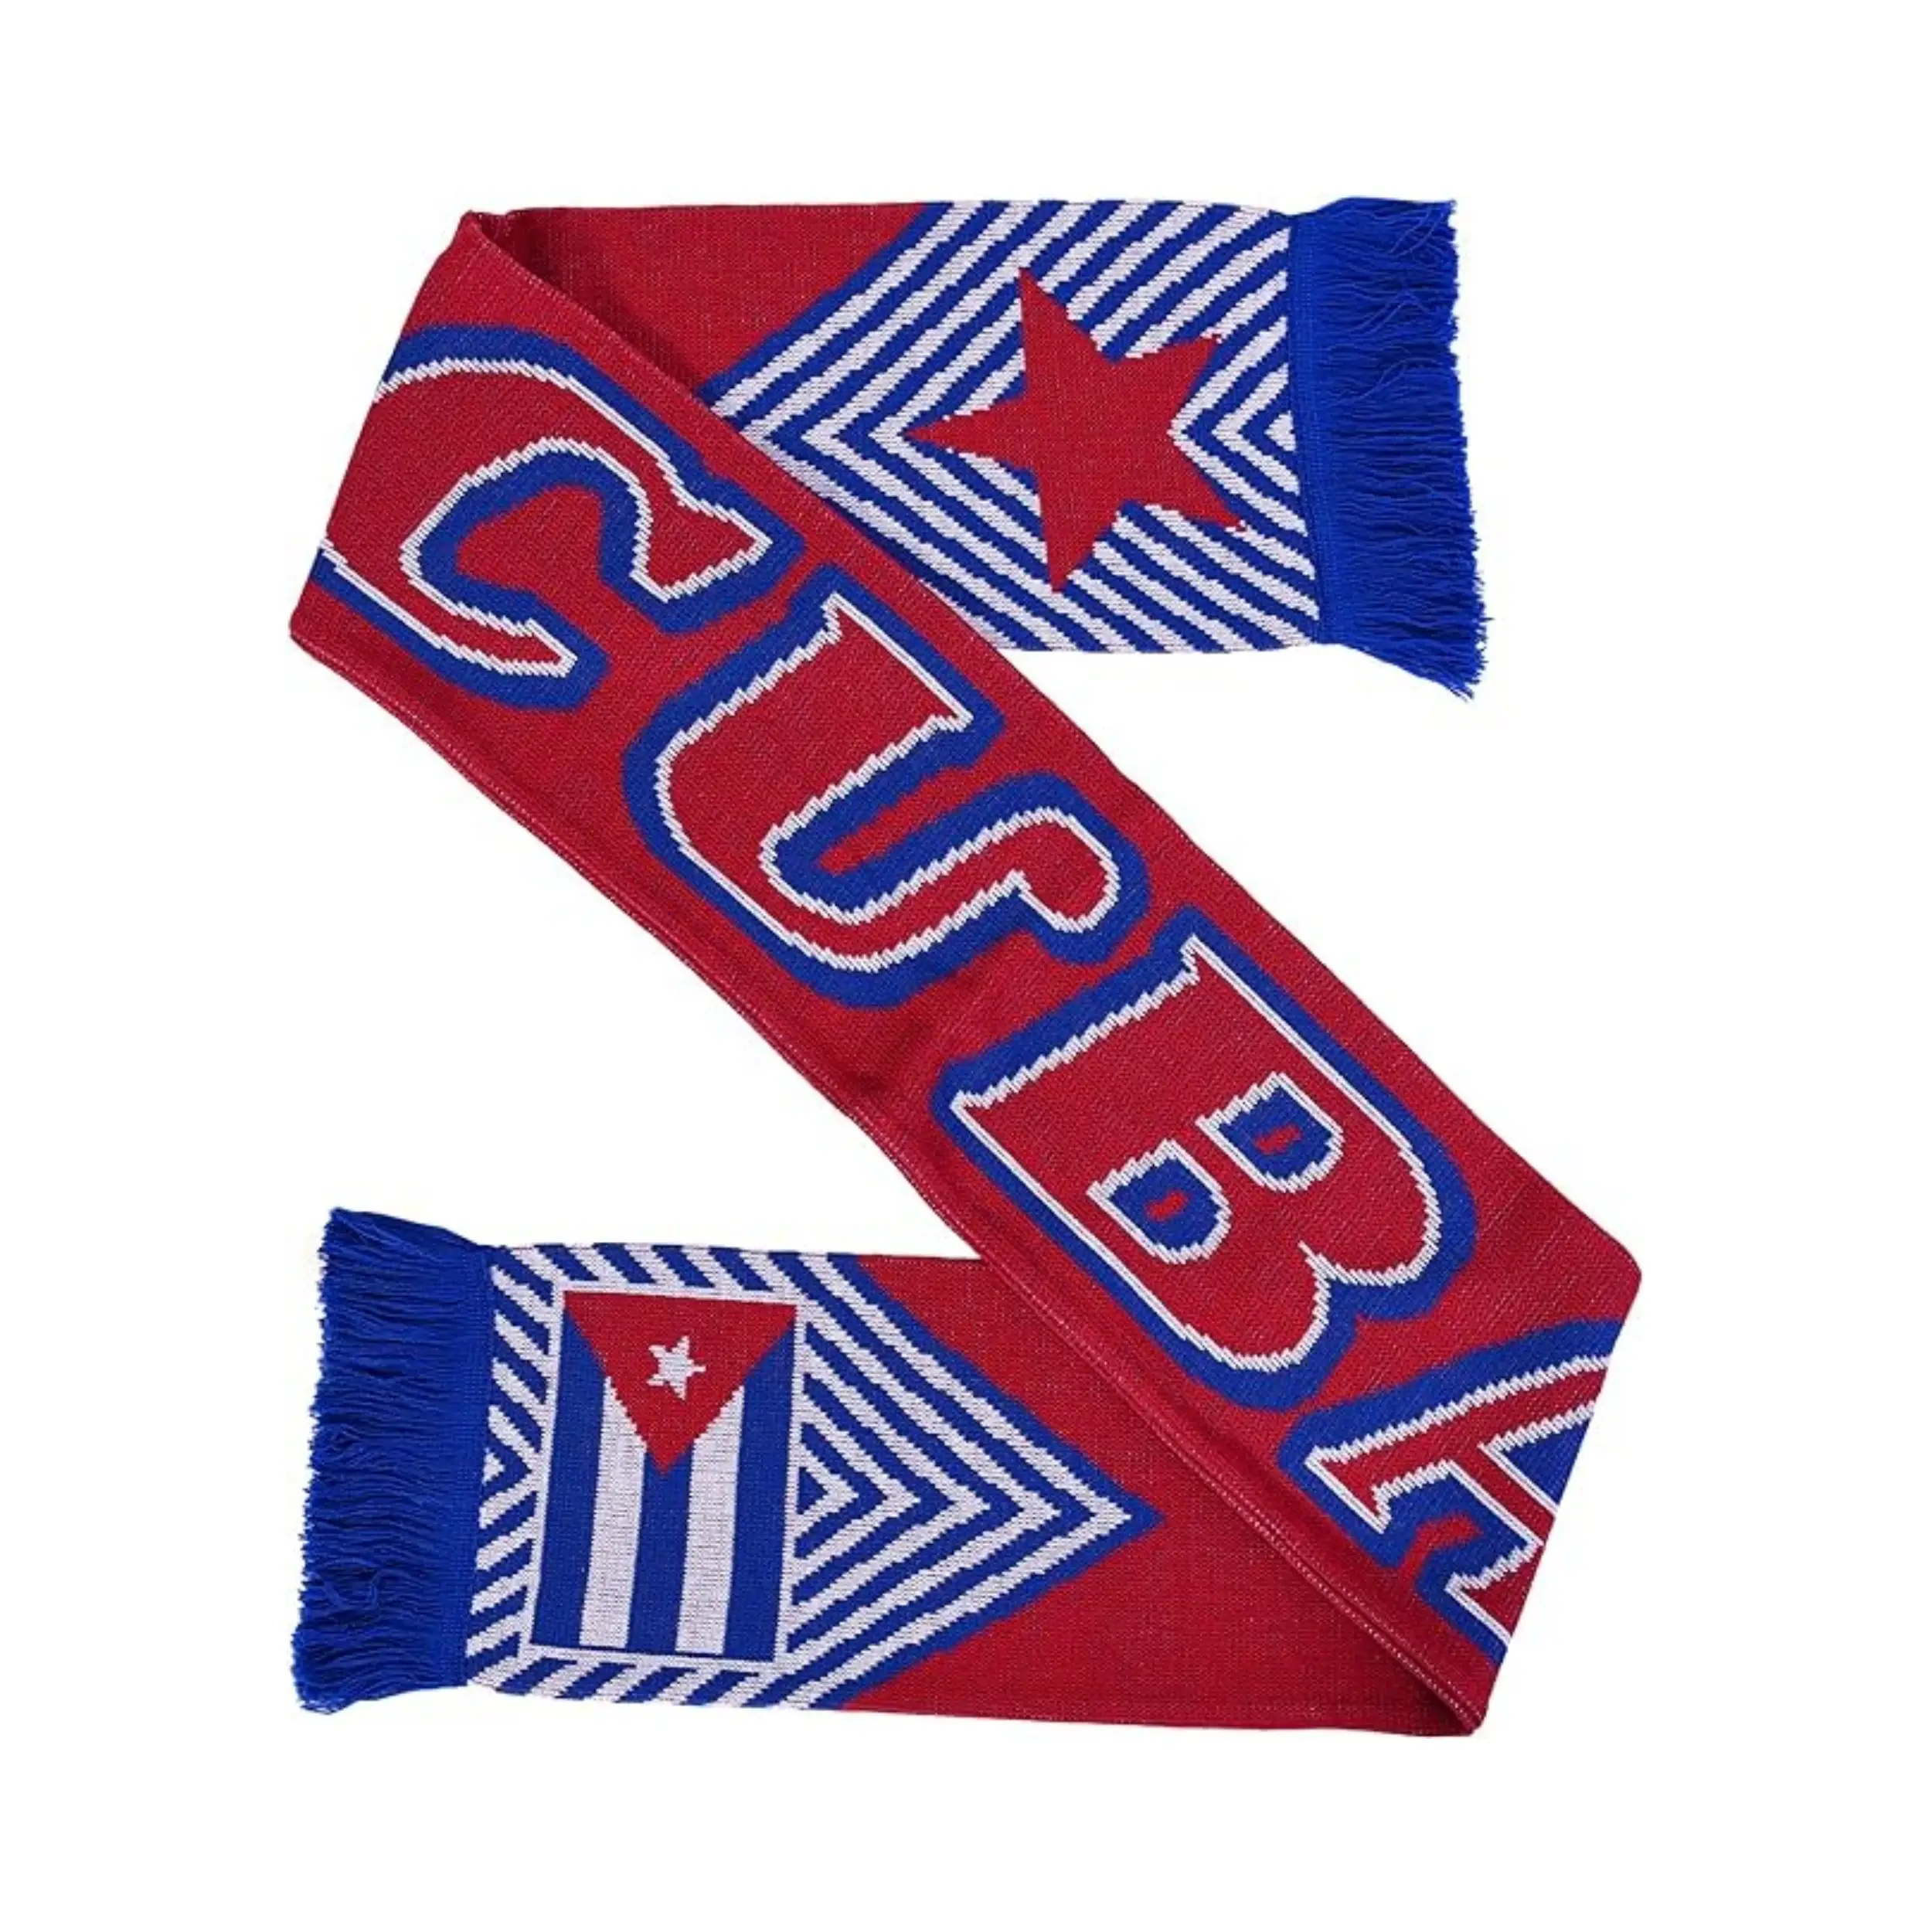 La Mejor Bandera Nacional De Cuba personalizada de alta calidad, venta al por mayor, bufanda de fútbol tejida de alta calidad para fanáticos de los deportes